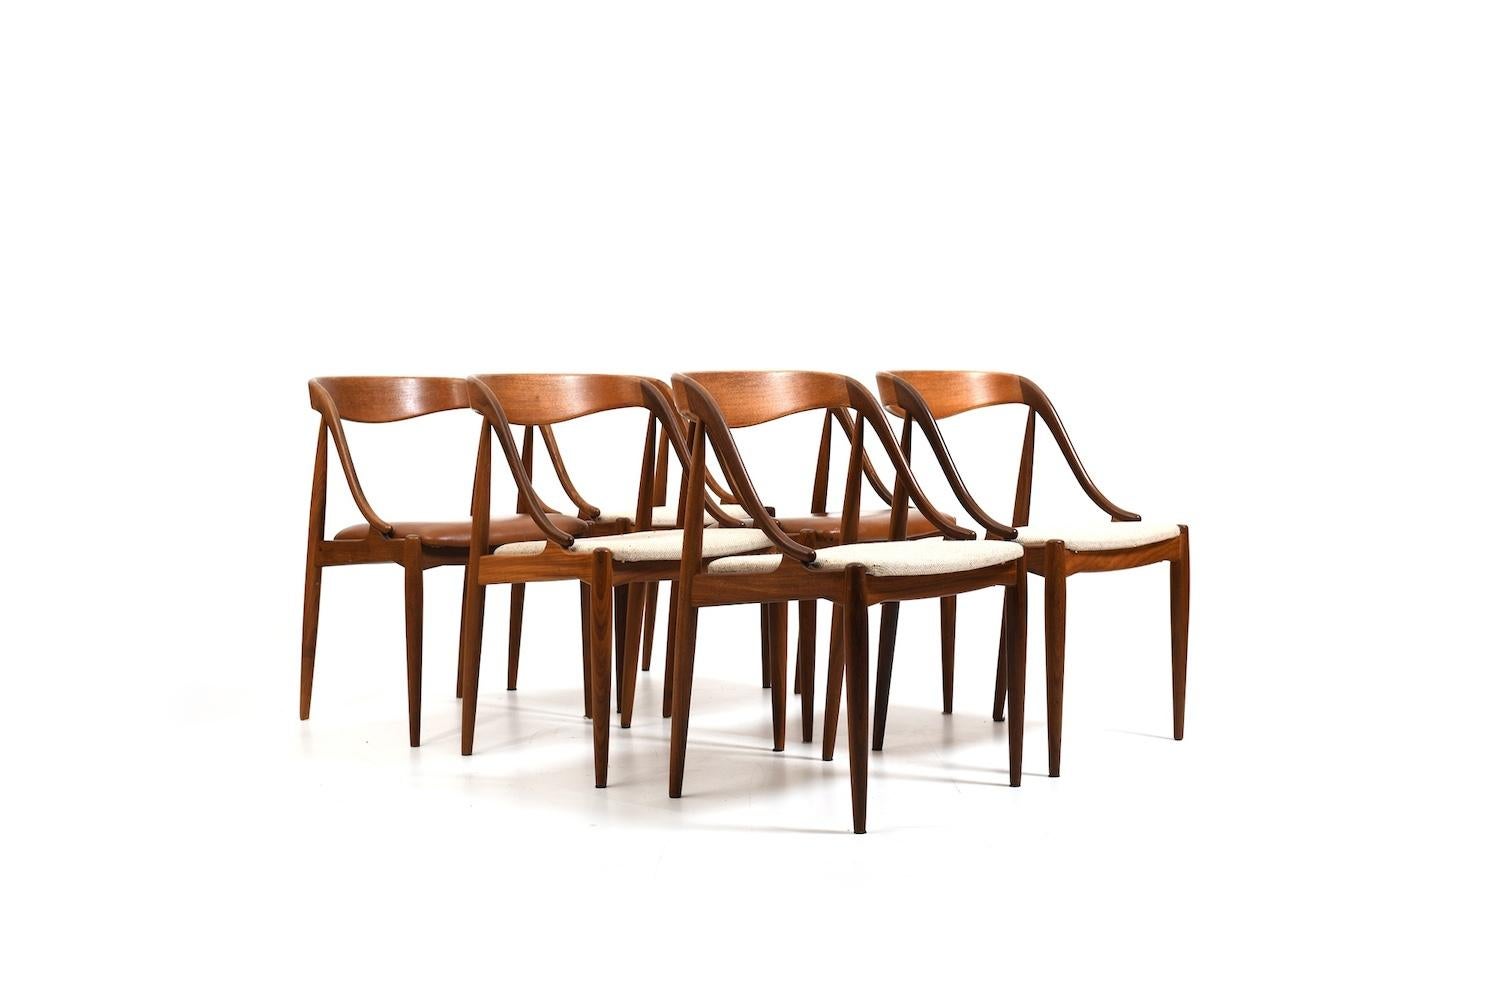 Satz von sechs dänischen Esszimmerstühlen aus Teakholz. Design von Johannes Andersen für Uldum Møbelfabrik 1950er Jahre. Modell Nr.16. Gepolstert mit cremefarbenem Stoff. 2 Stühle später mit braunem Kunstleder. Wir können neuen Stoff für Sie setzen,